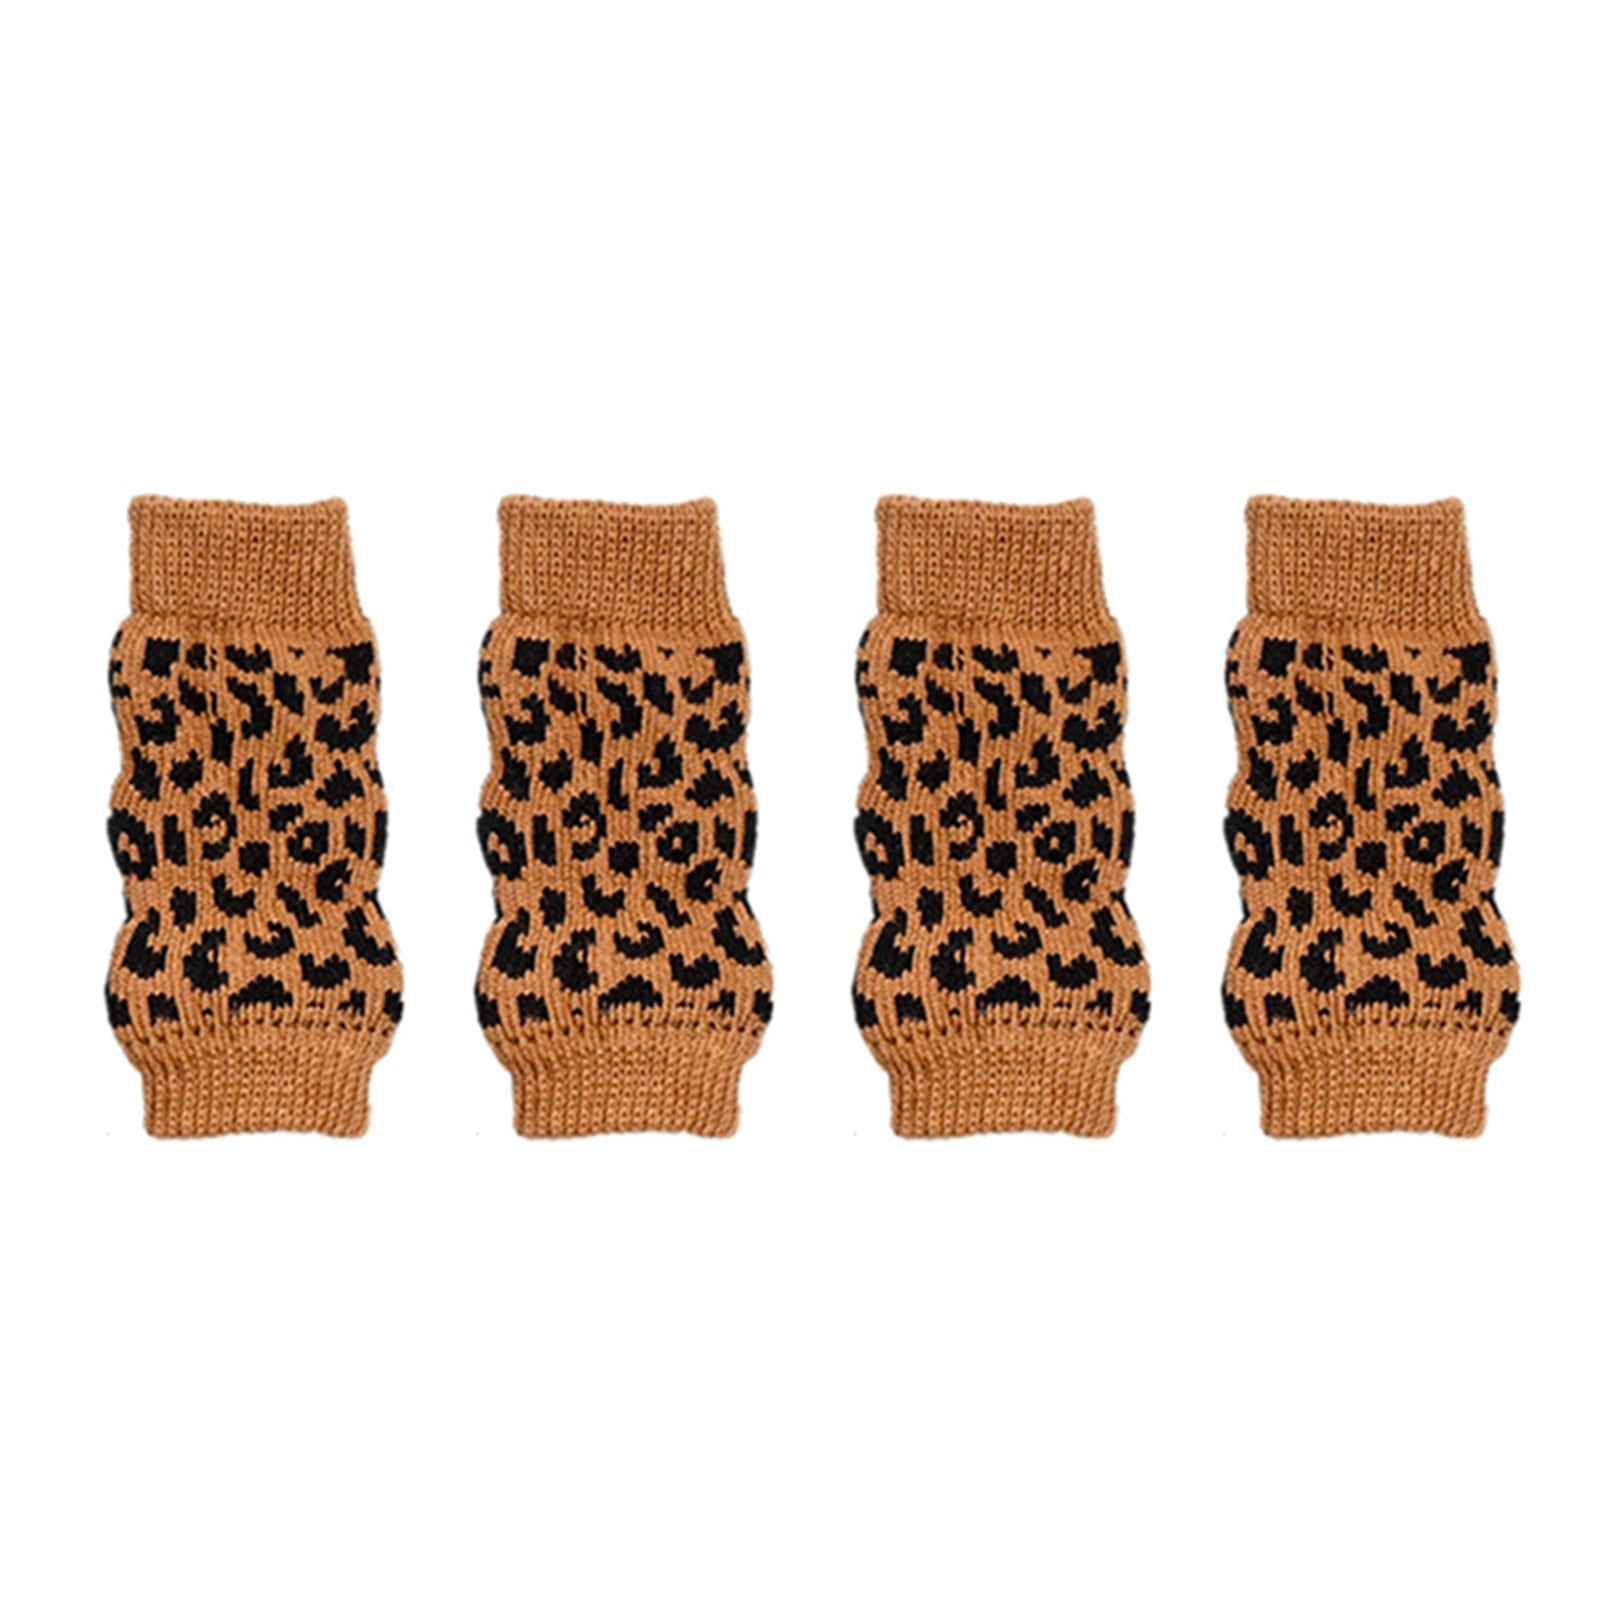 Winter Pet Dog Leg Socks Zebra Leopard Dots Print Non-Slip Leg Warmers Leopard S Mggsndi 4Pcs/Set Dog Leg Warmers